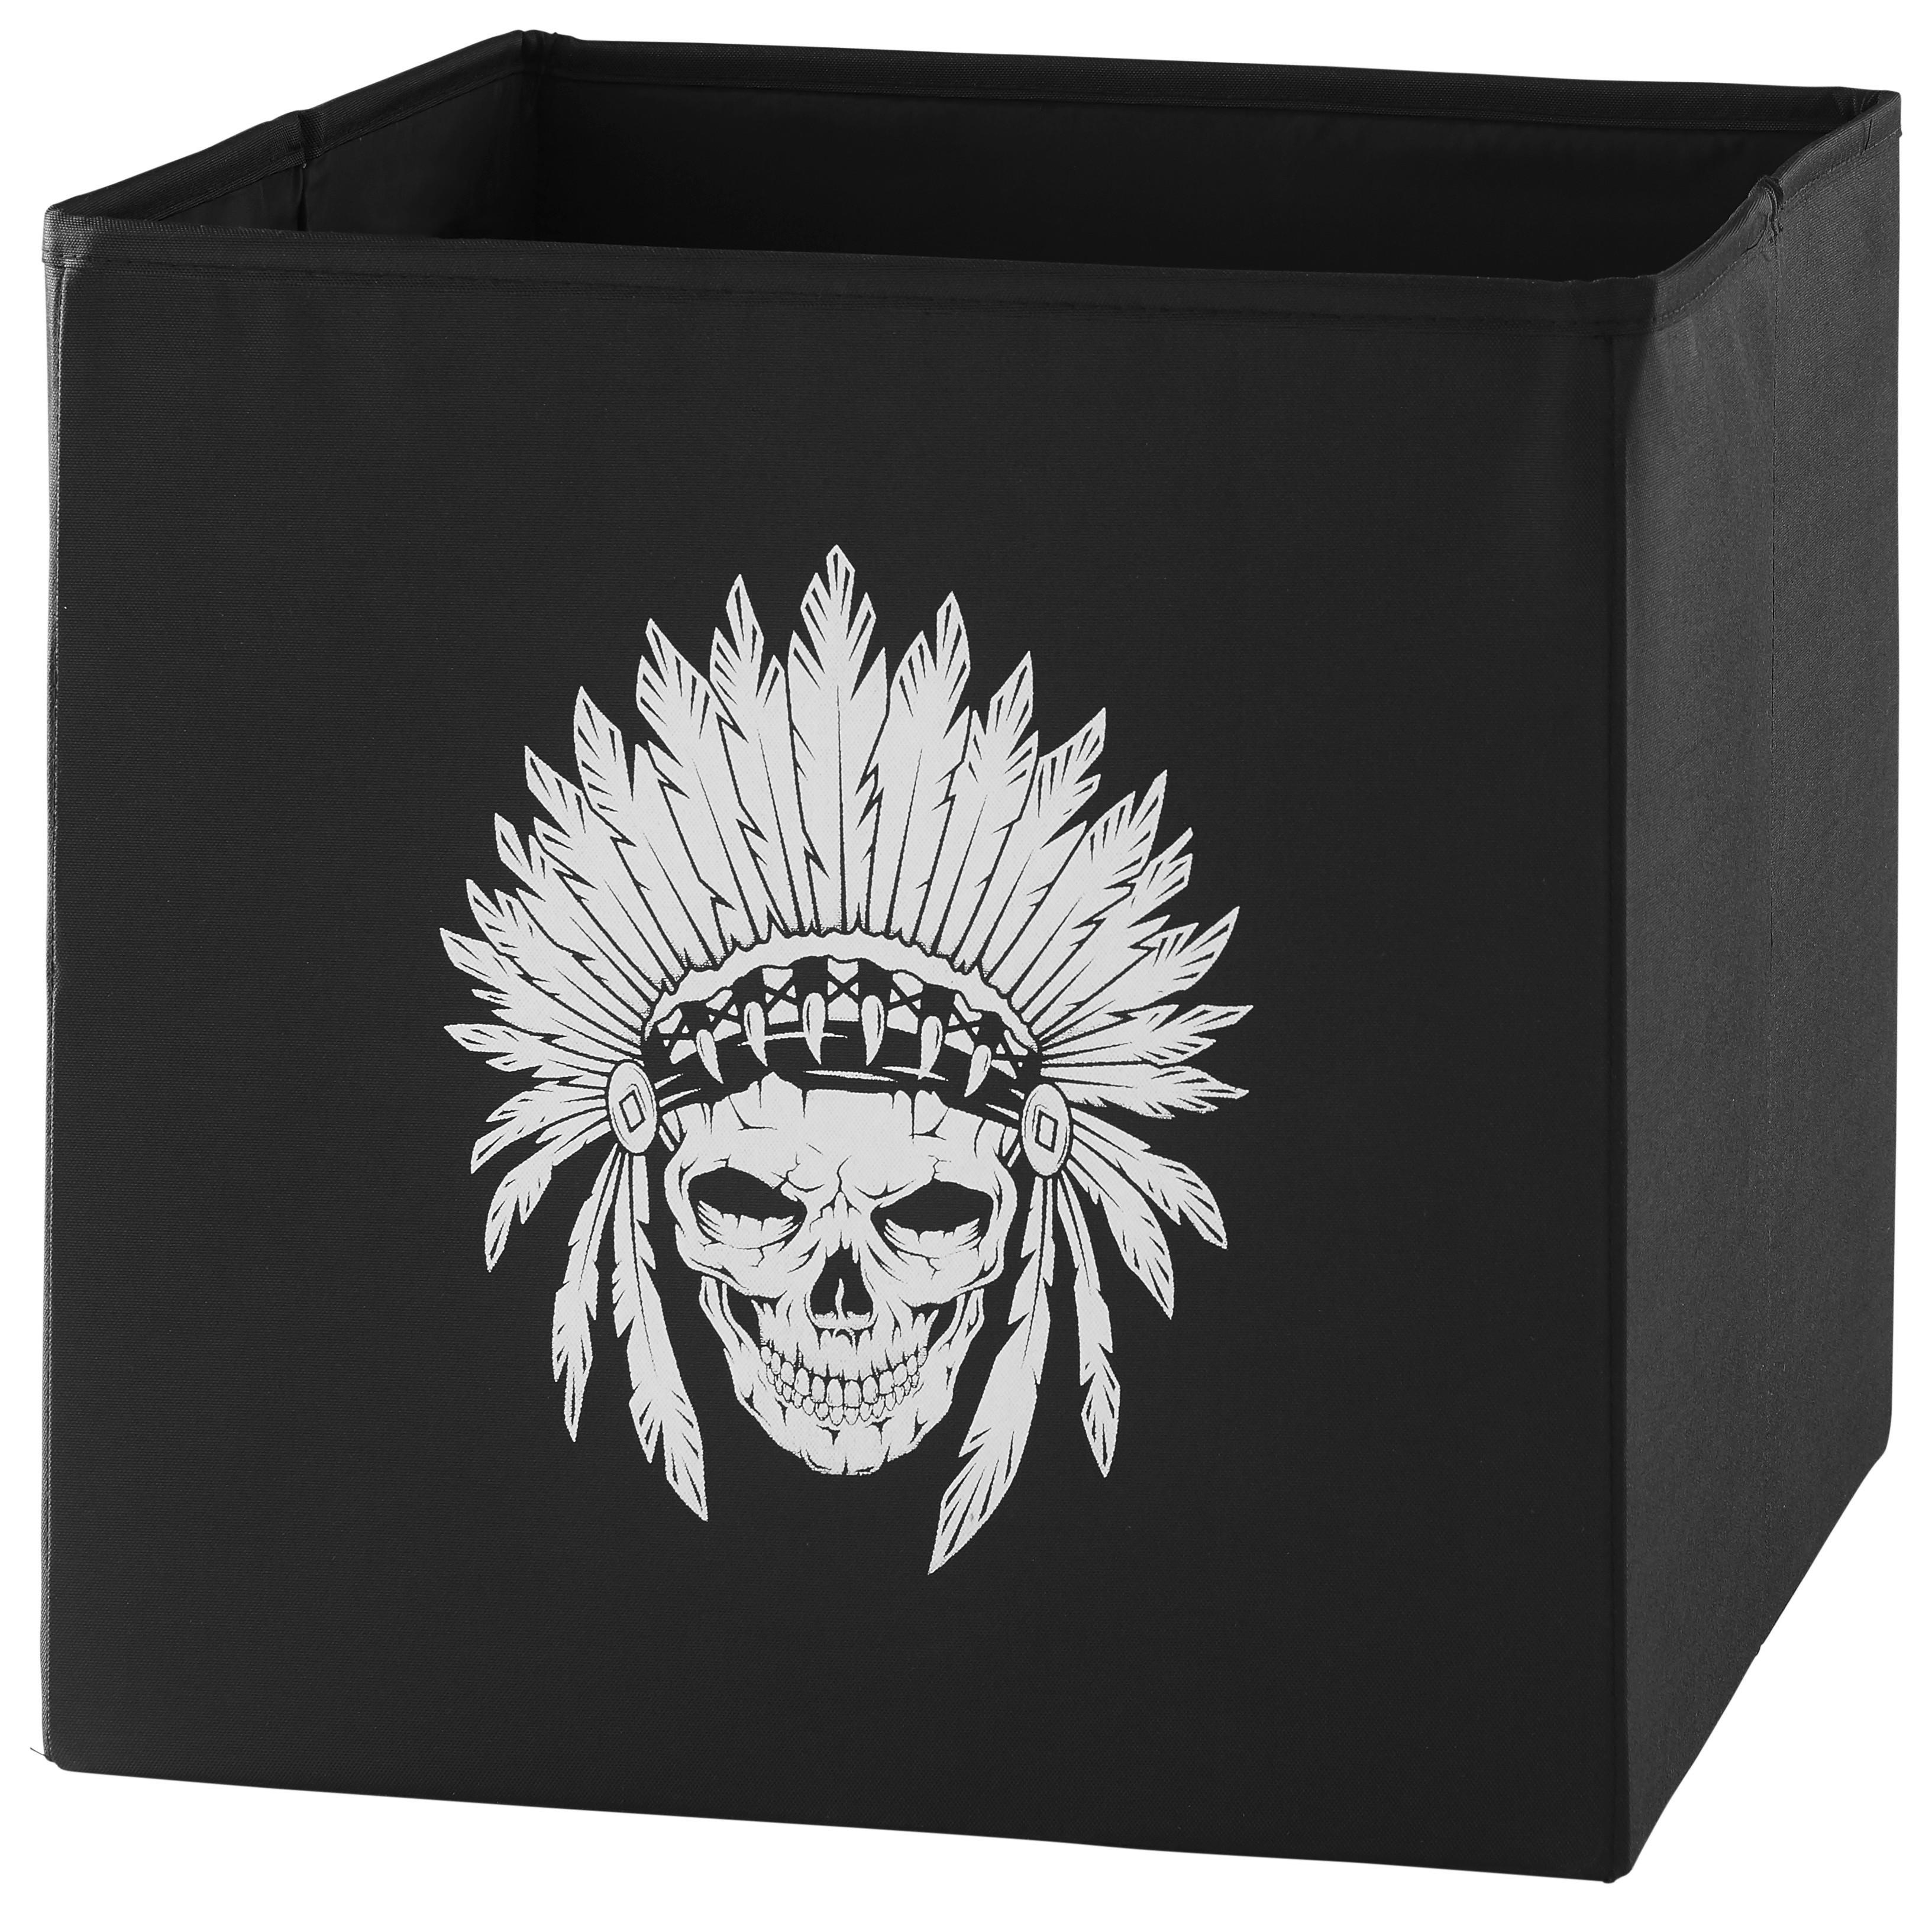 Skladací Box Michi, 30/30/30 Cm - čierna/biela, textil (30/30/30cm) - Modern Living